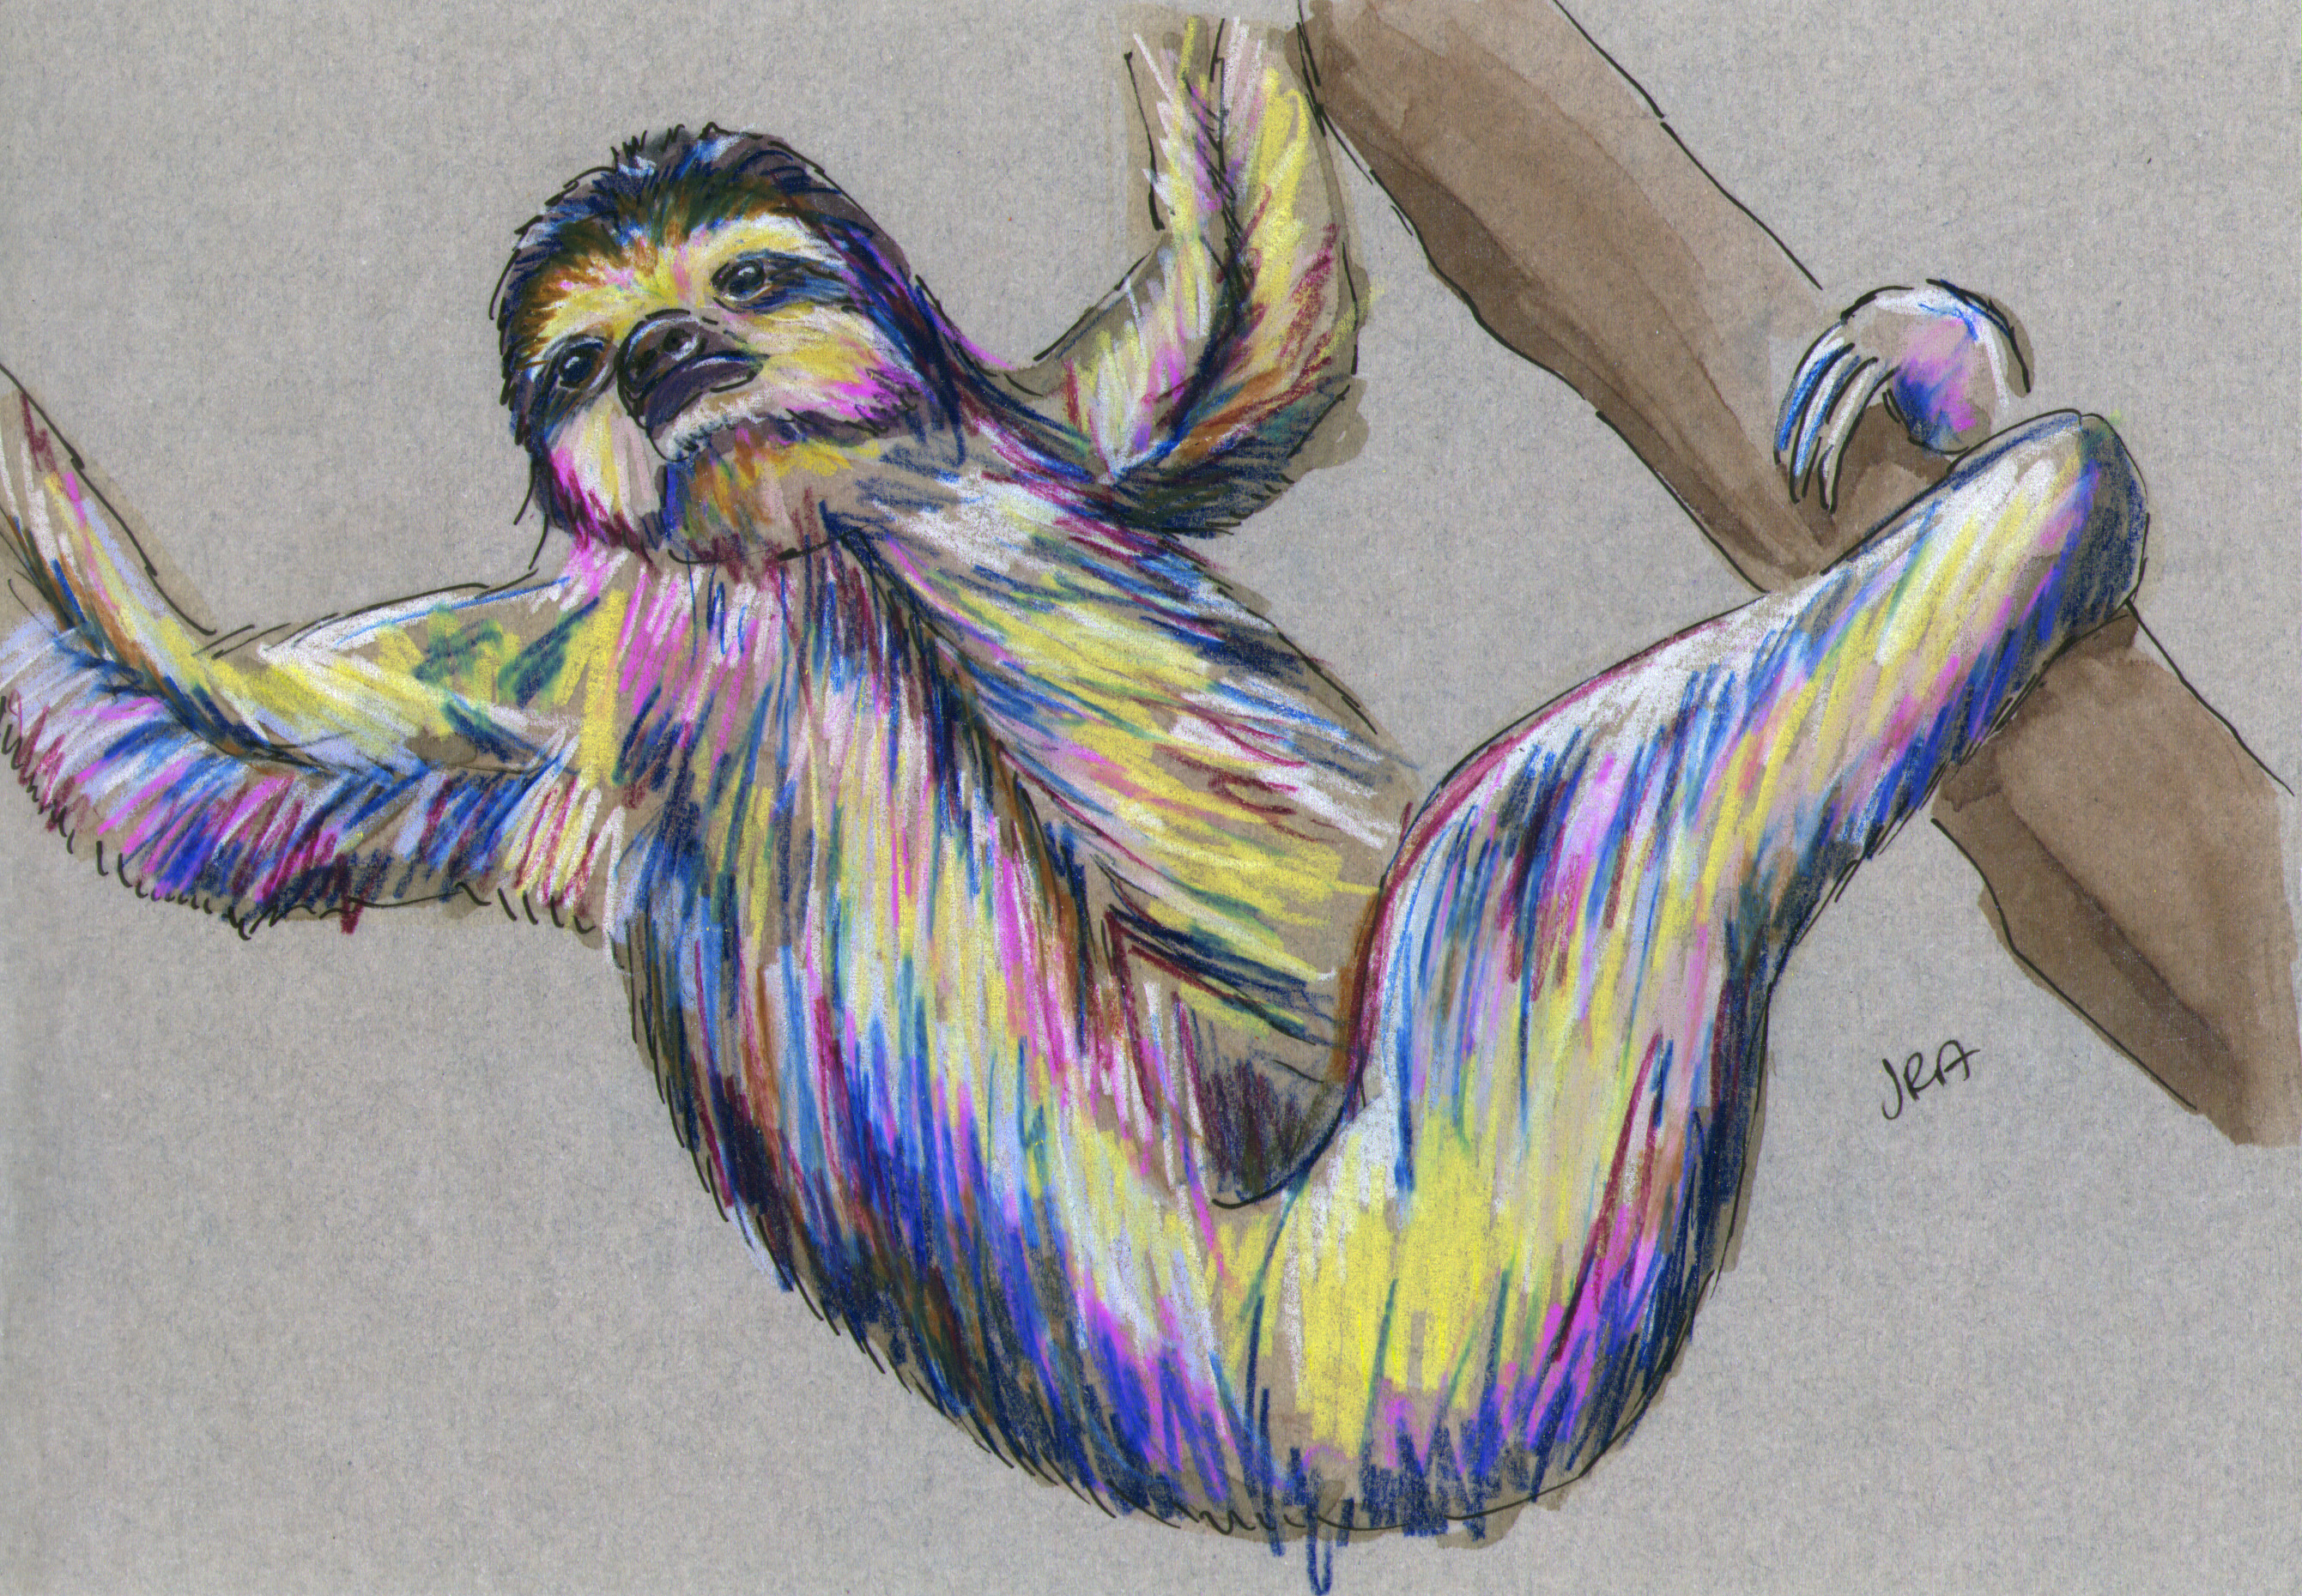 three toed sloth drawing